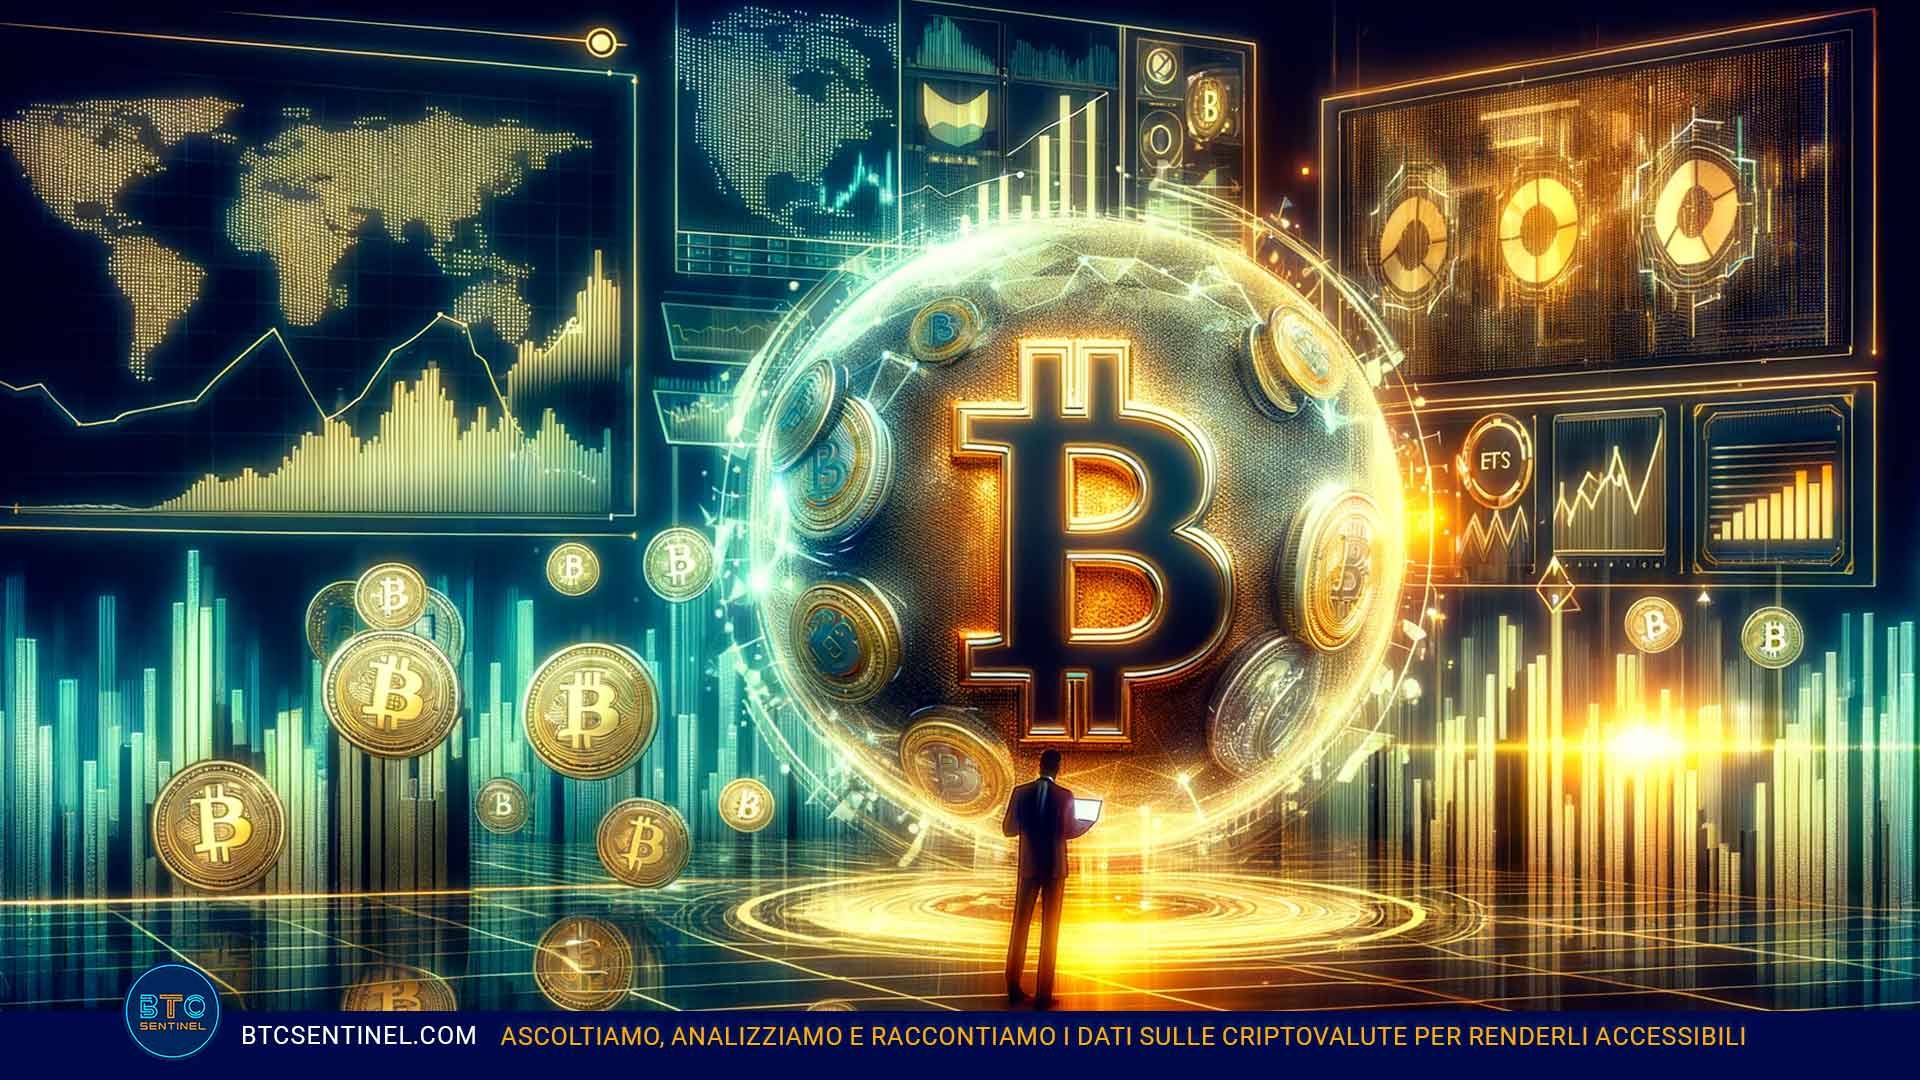 L'esordio degli ETF Bitcoin spot: ecco com'è andato nei mercati